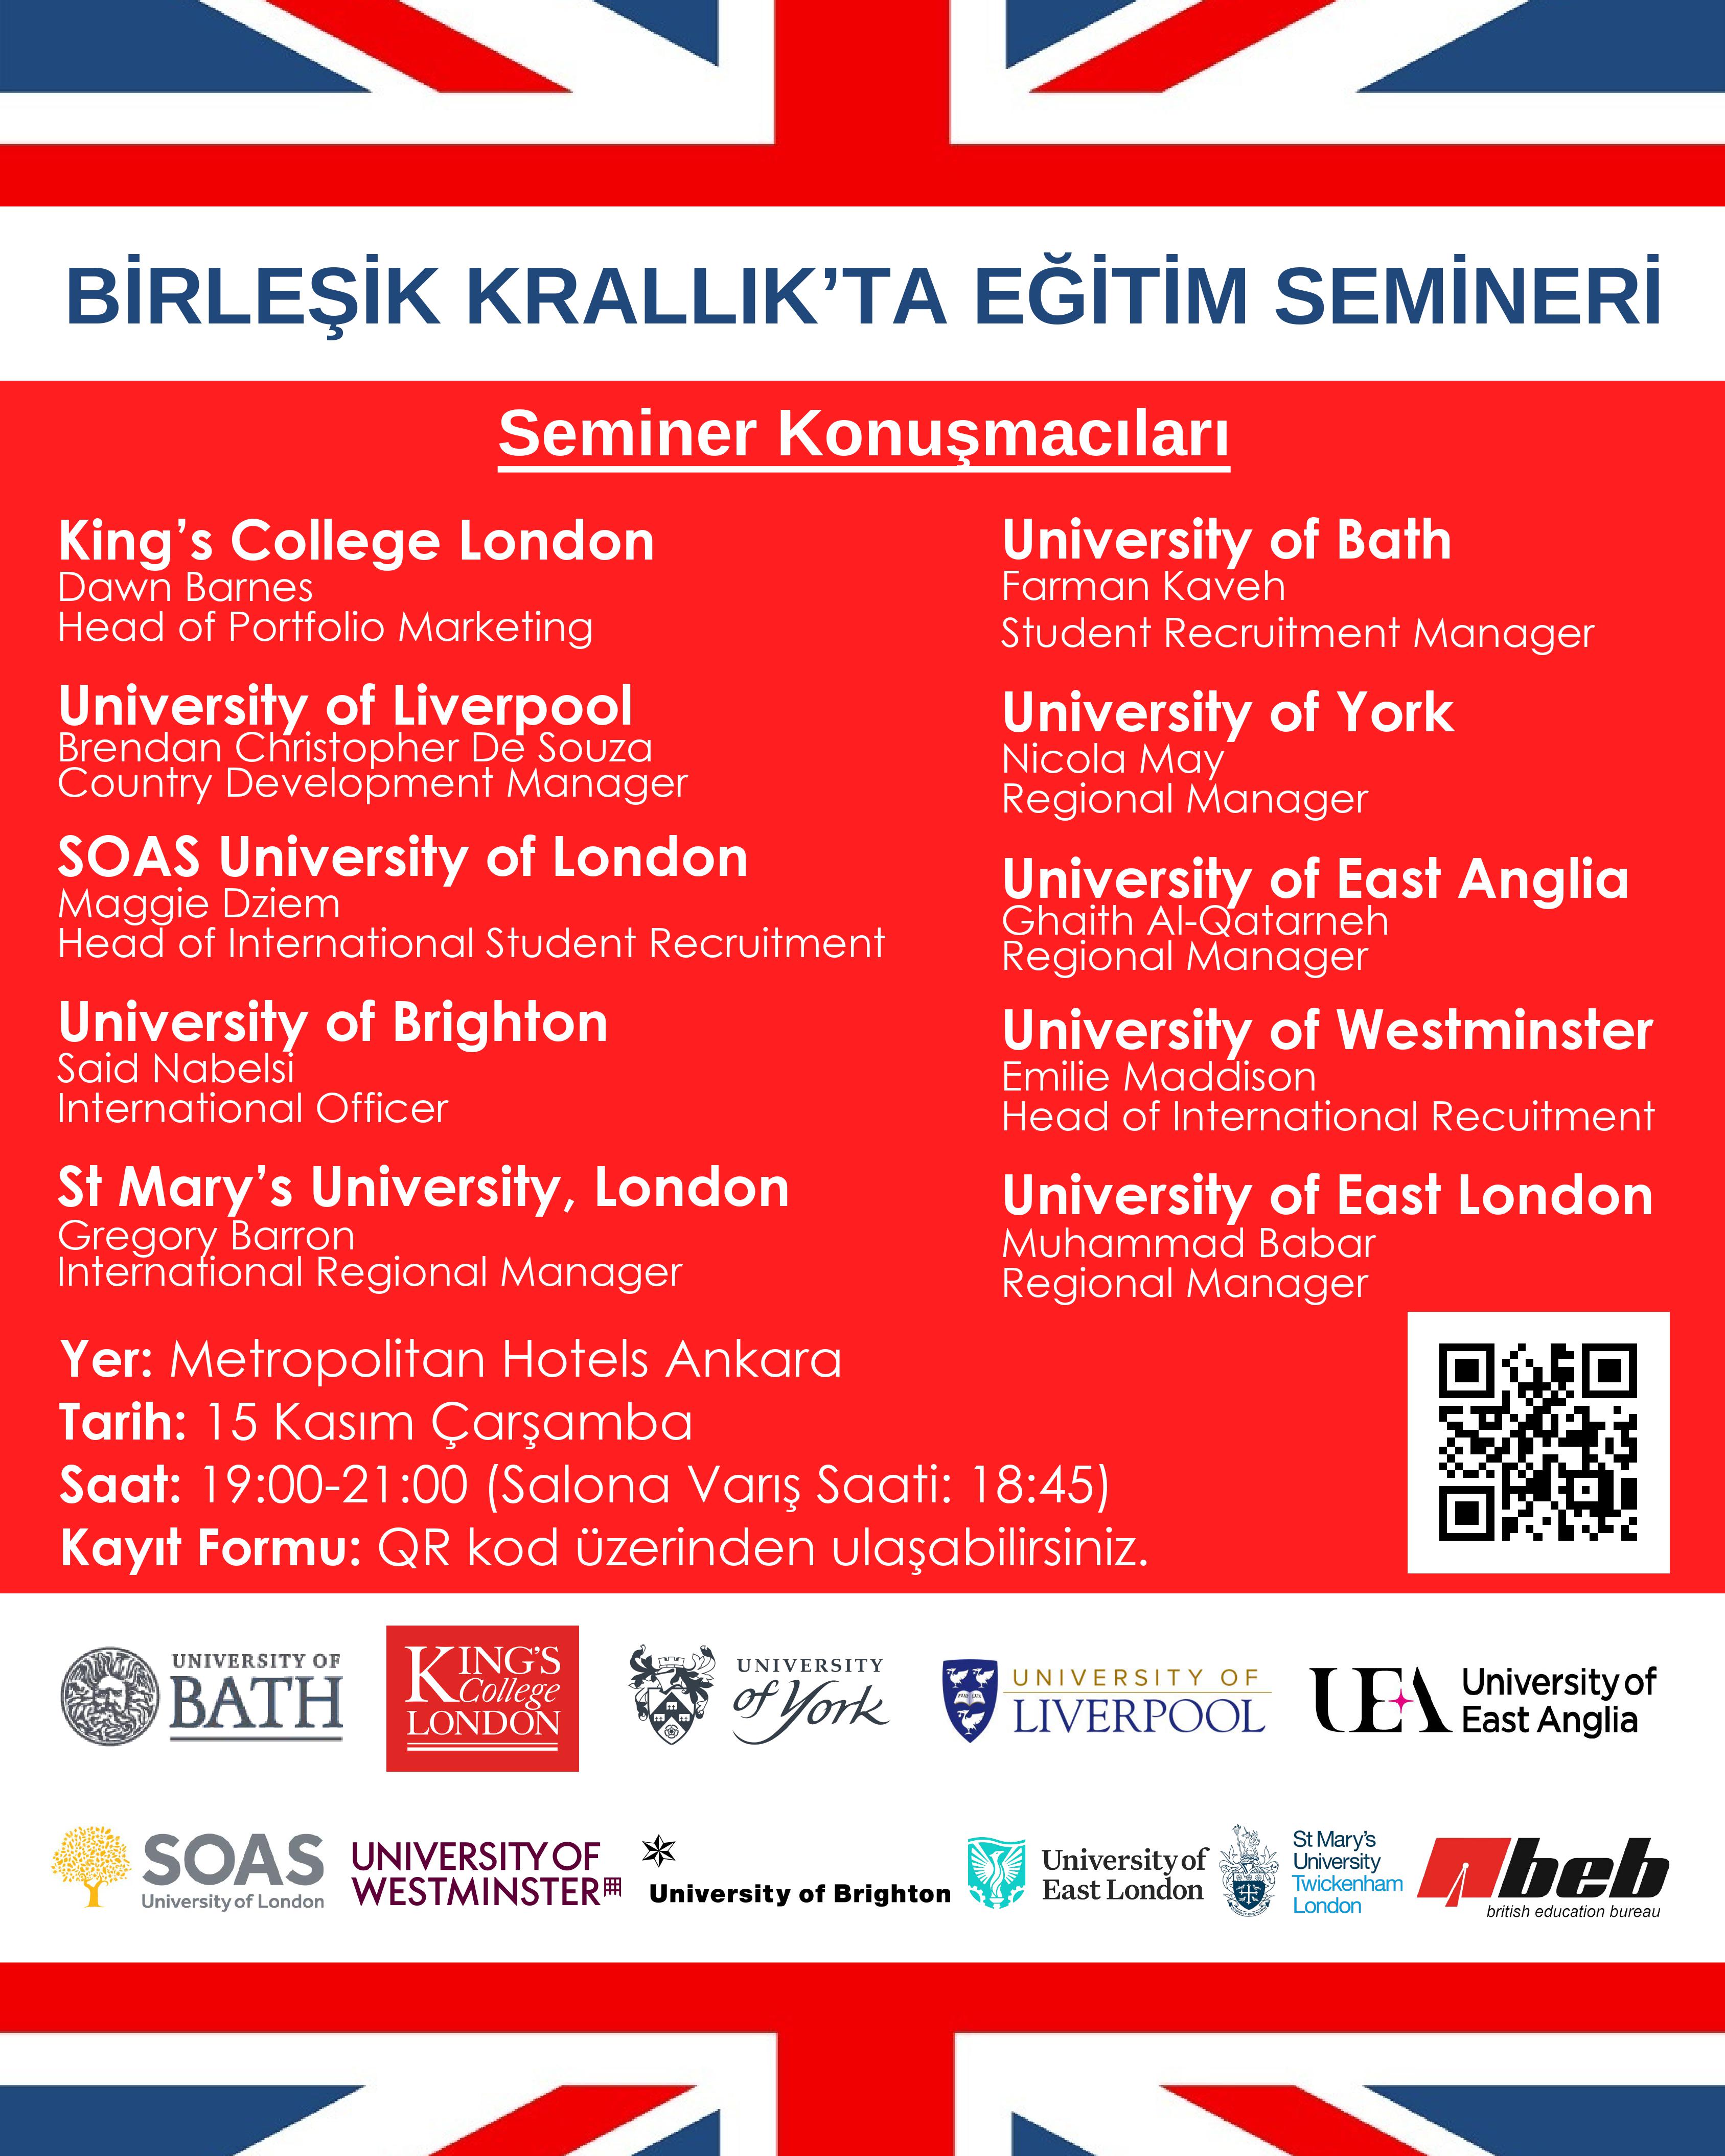 İngiltere'nin önde gelen Üniversiteleriyle Ankara'da BEB tarafından düzenlenecek Birleşik Krallık'ta Eğitim Semineri'nin davetiye görseli